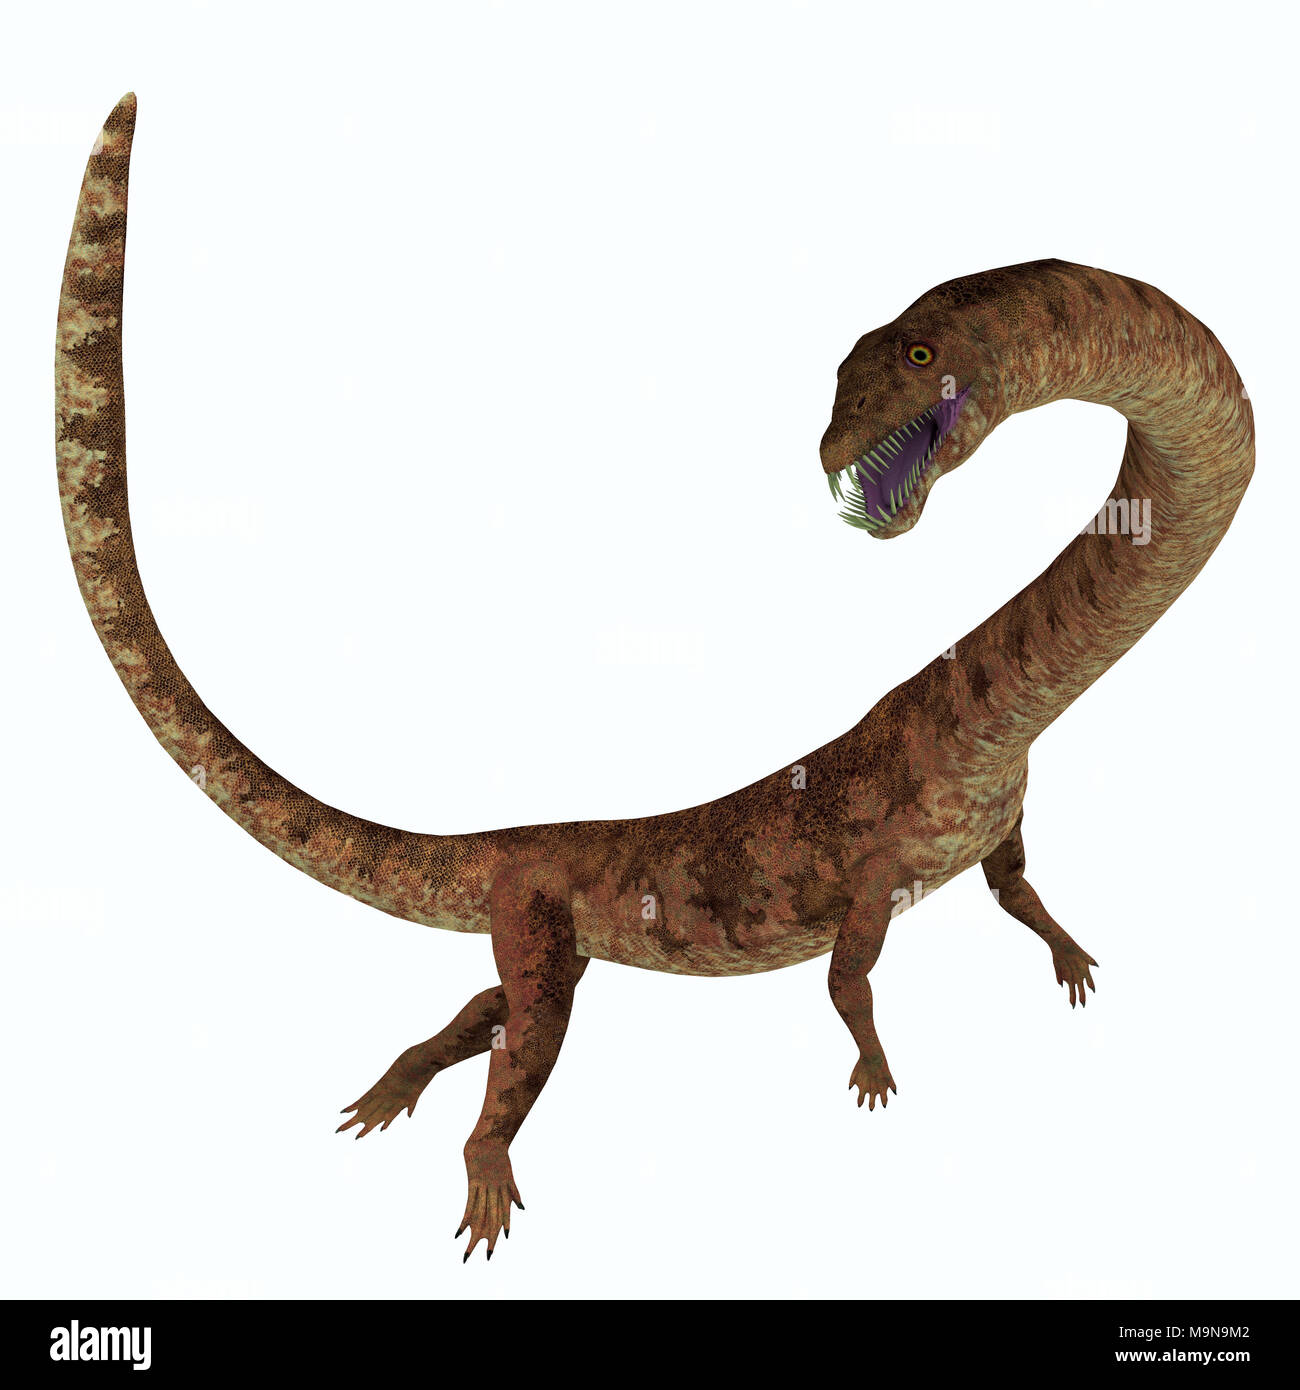 Tanystropheus Profil côté dinosaure - Tanystropheus était un reptile prédateur marin qui vivait dans les mers d'Europe et du Moyen-Orient. Banque D'Images